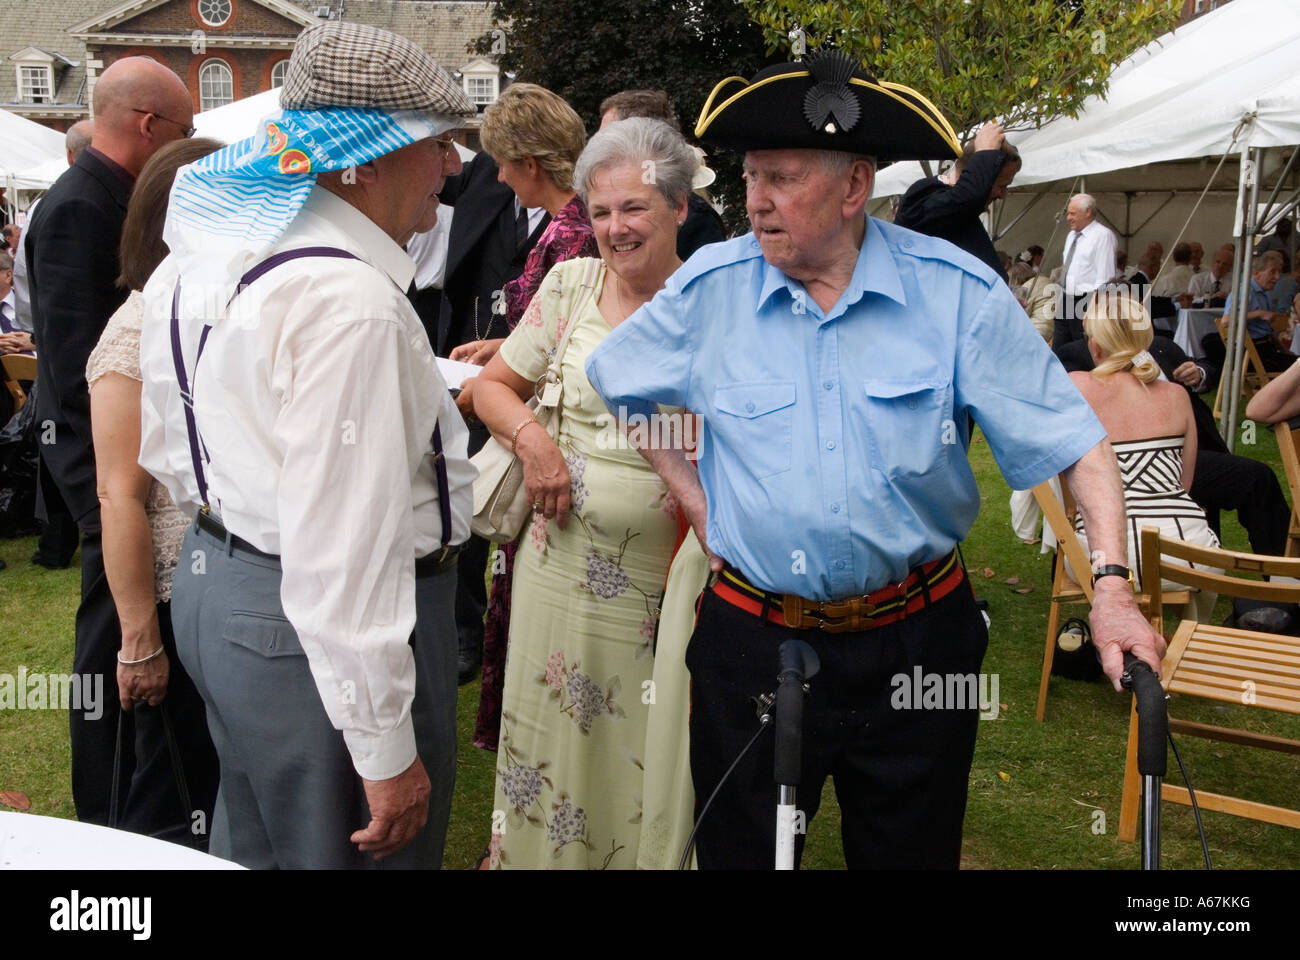 Vétérans de guerre Chelsea Pensioners London. Deux vieux soldats hommes Founders Day fête annuelle jardin d'été avec fille, Londres Angleterre Royaume-Uni années 2006 2000 Banque D'Images